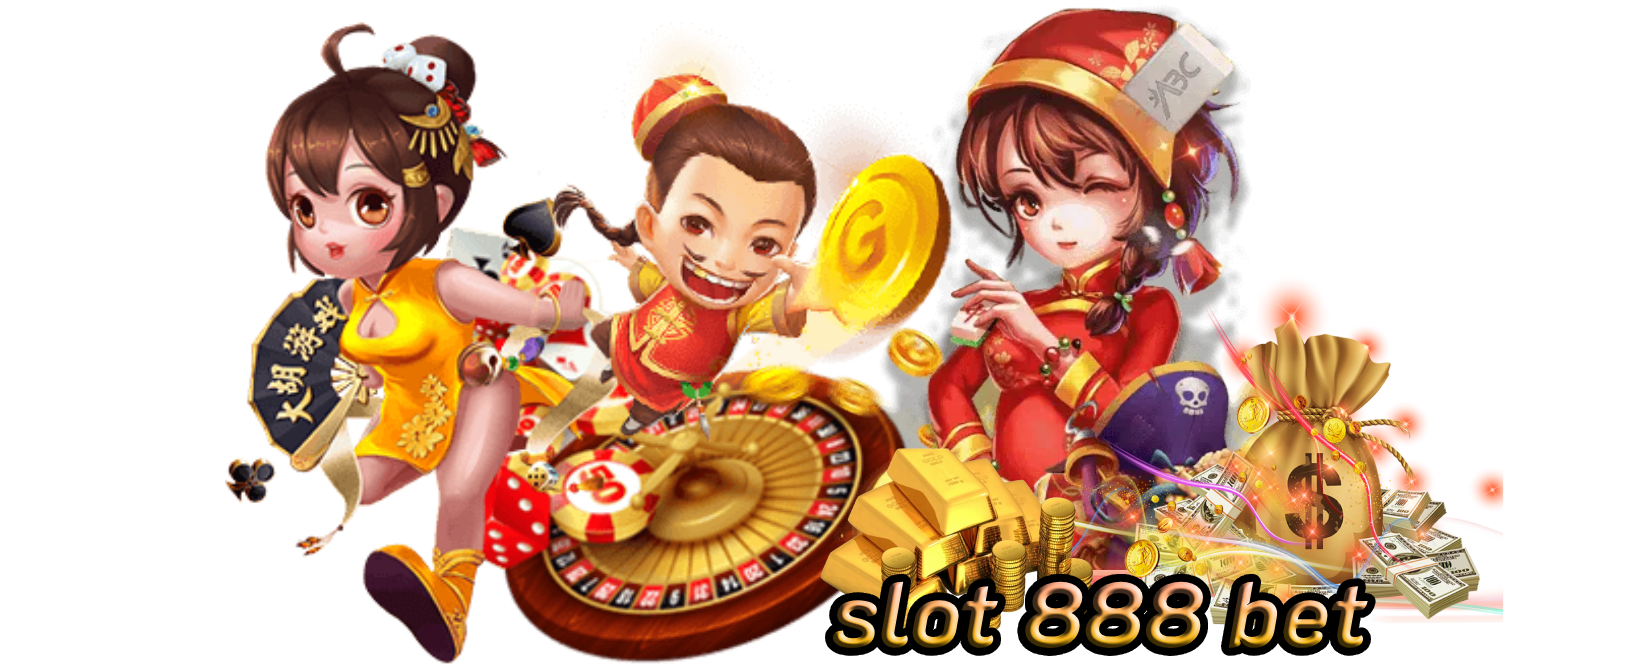 slot 888 bet สุดยอดคาสิโนค+รวมเกมหลากหลายให้ฝึกทักษะ